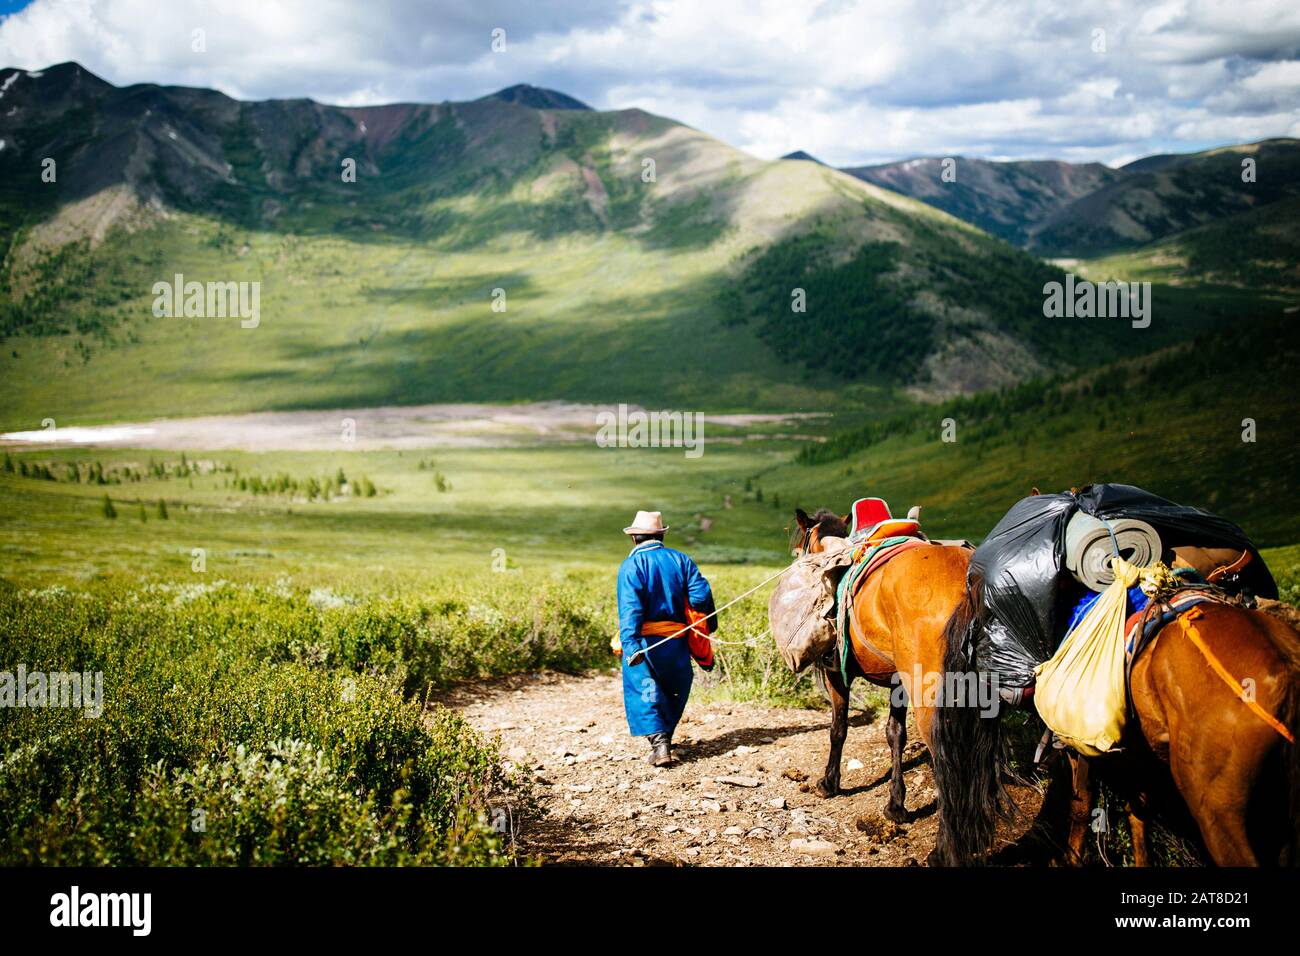 Guide e viaggiatori cavalcano i cavalli nelle foreste di Taiga orientale della Mongolia settentrionale per visitare i remoti e nomadi pastori di renne che vivono vicino Al Sib Foto Stock